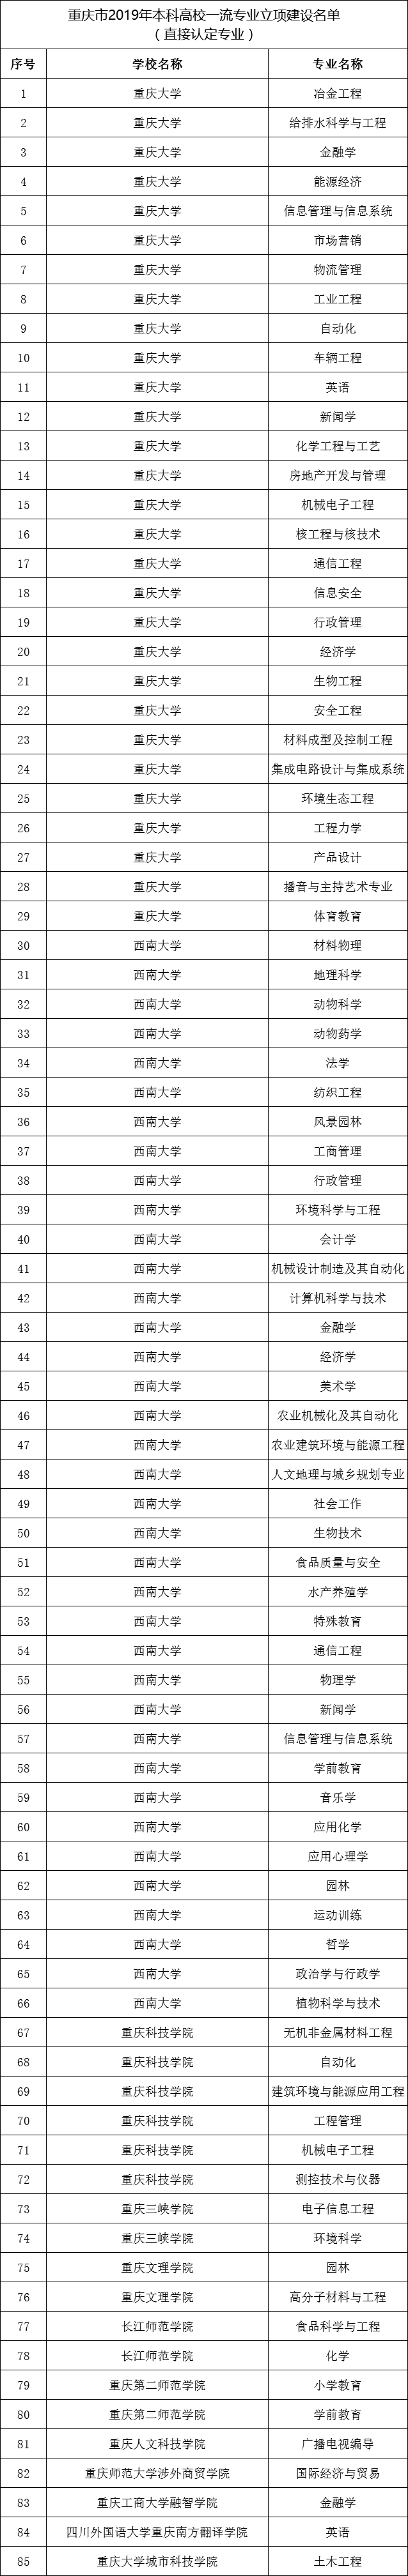 重庆市一流专业名单公示-重庆市一流本科专业建设名单